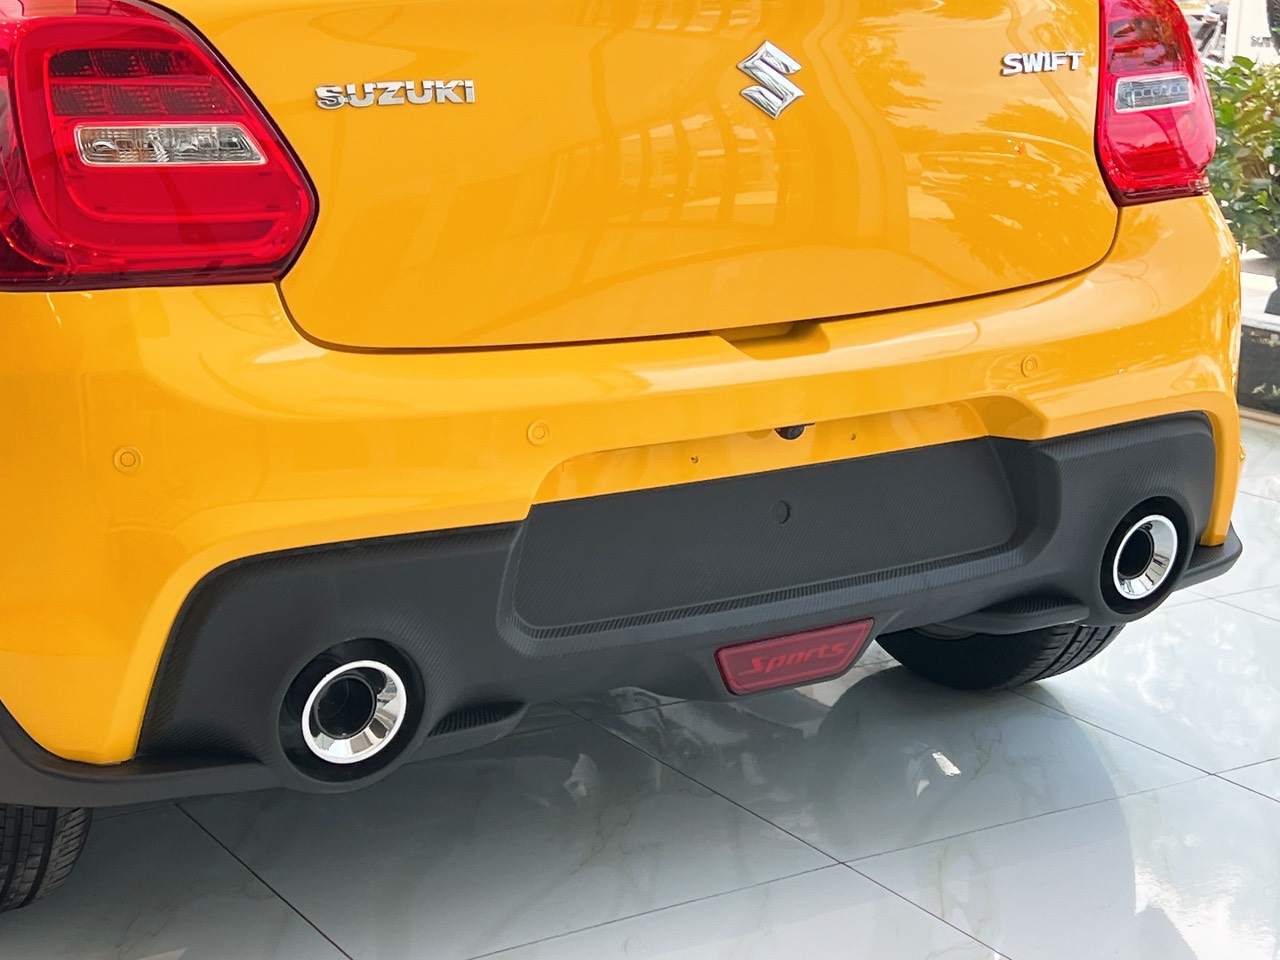 Thay thế cản sau zin của xe Suzuki Swift, giúp xe trông cân đối và thể thao hơn.